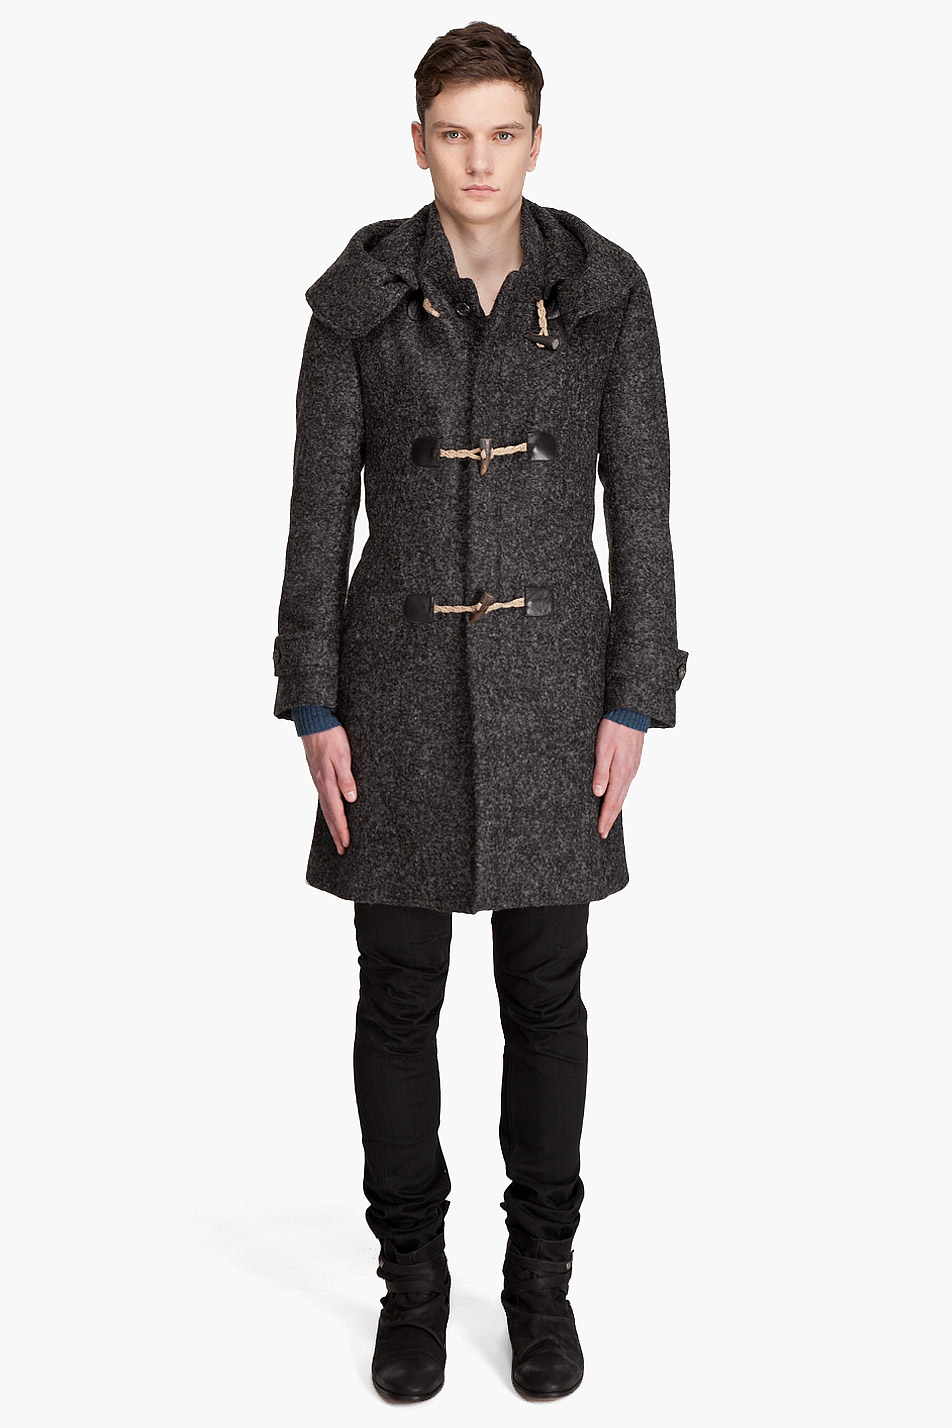 Lyst - Alexander mcqueen Duffle Coat in Gray for Men